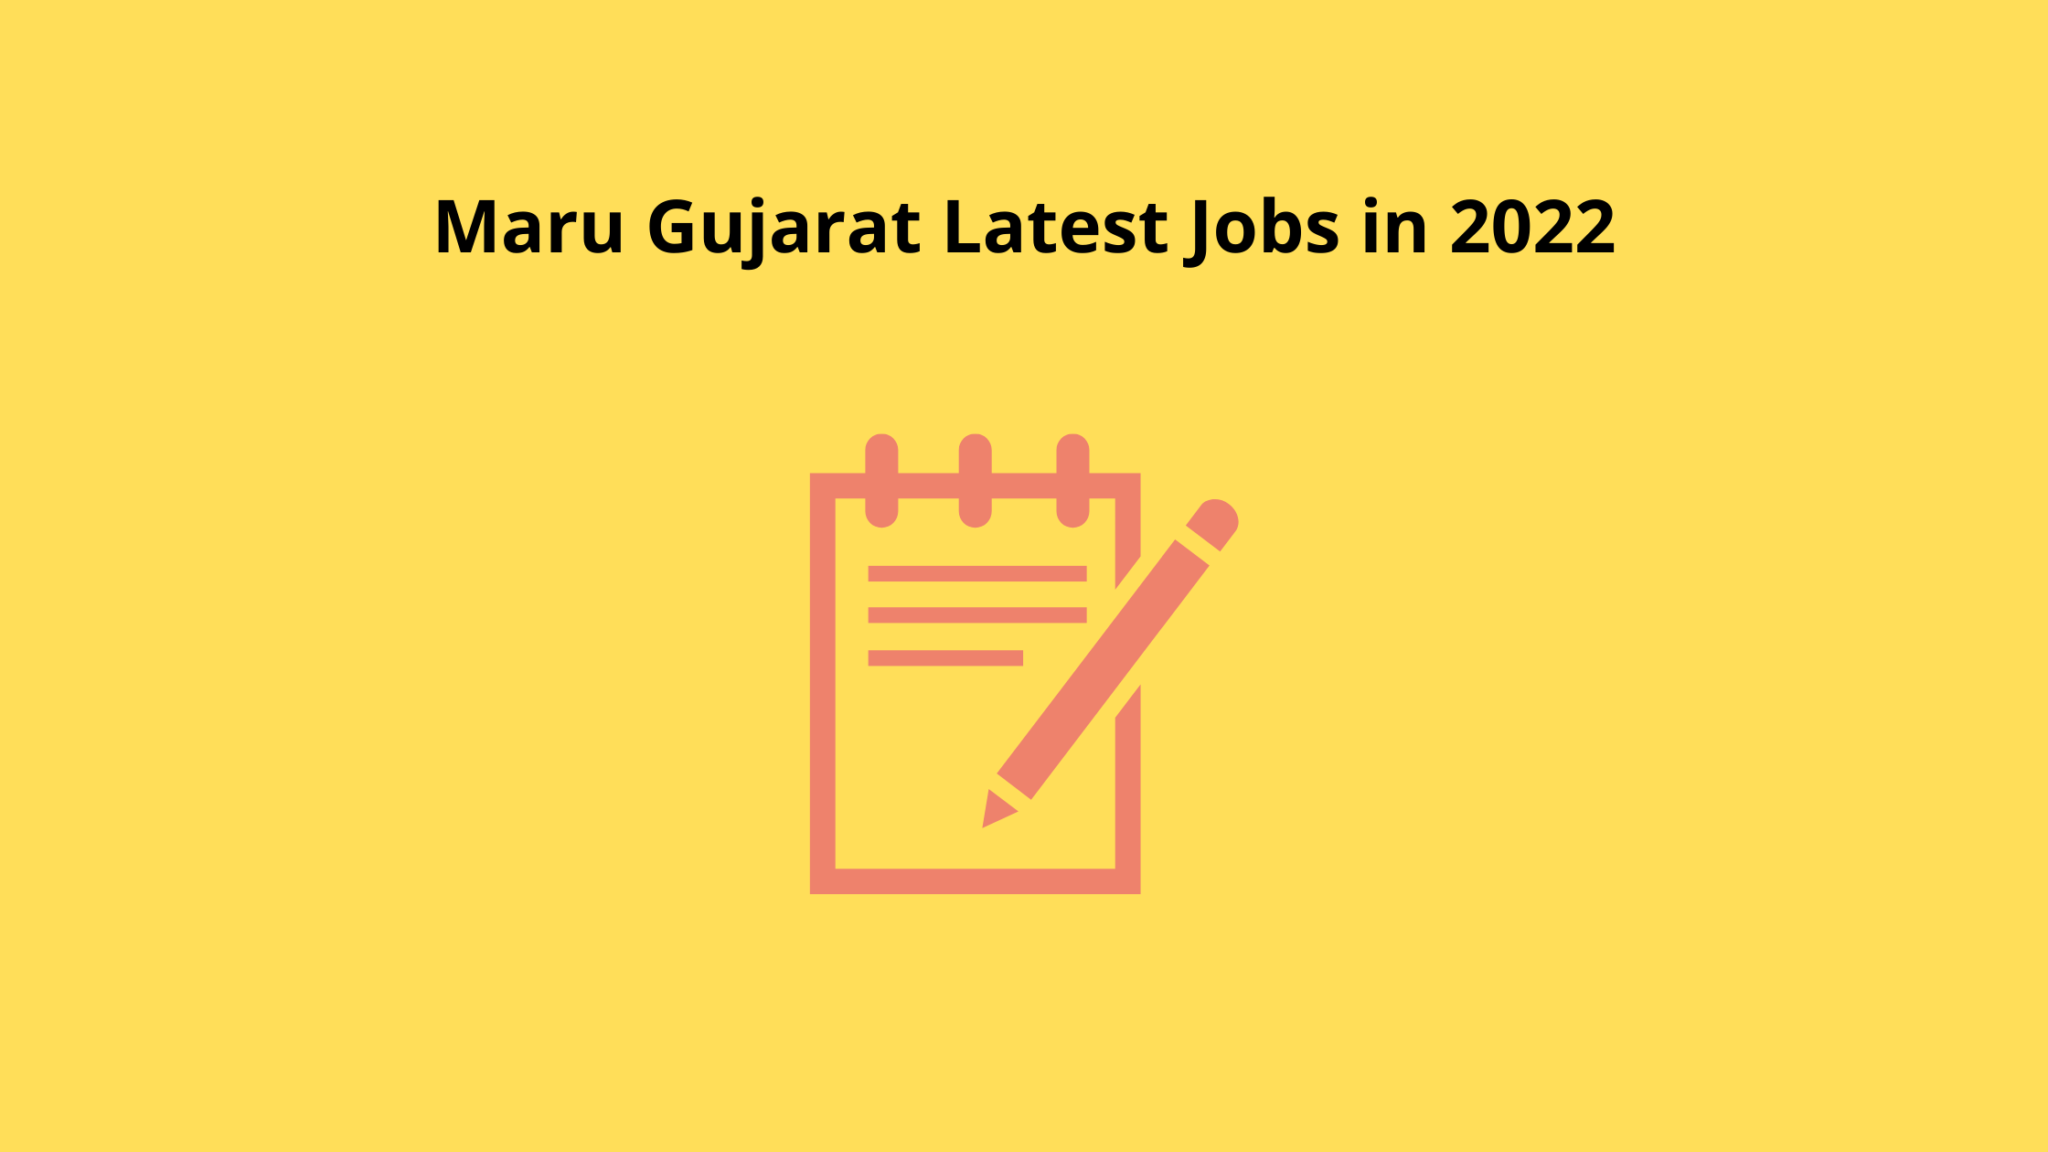 maru-gujarat-latest-jobs-in-2022-3f7b6993